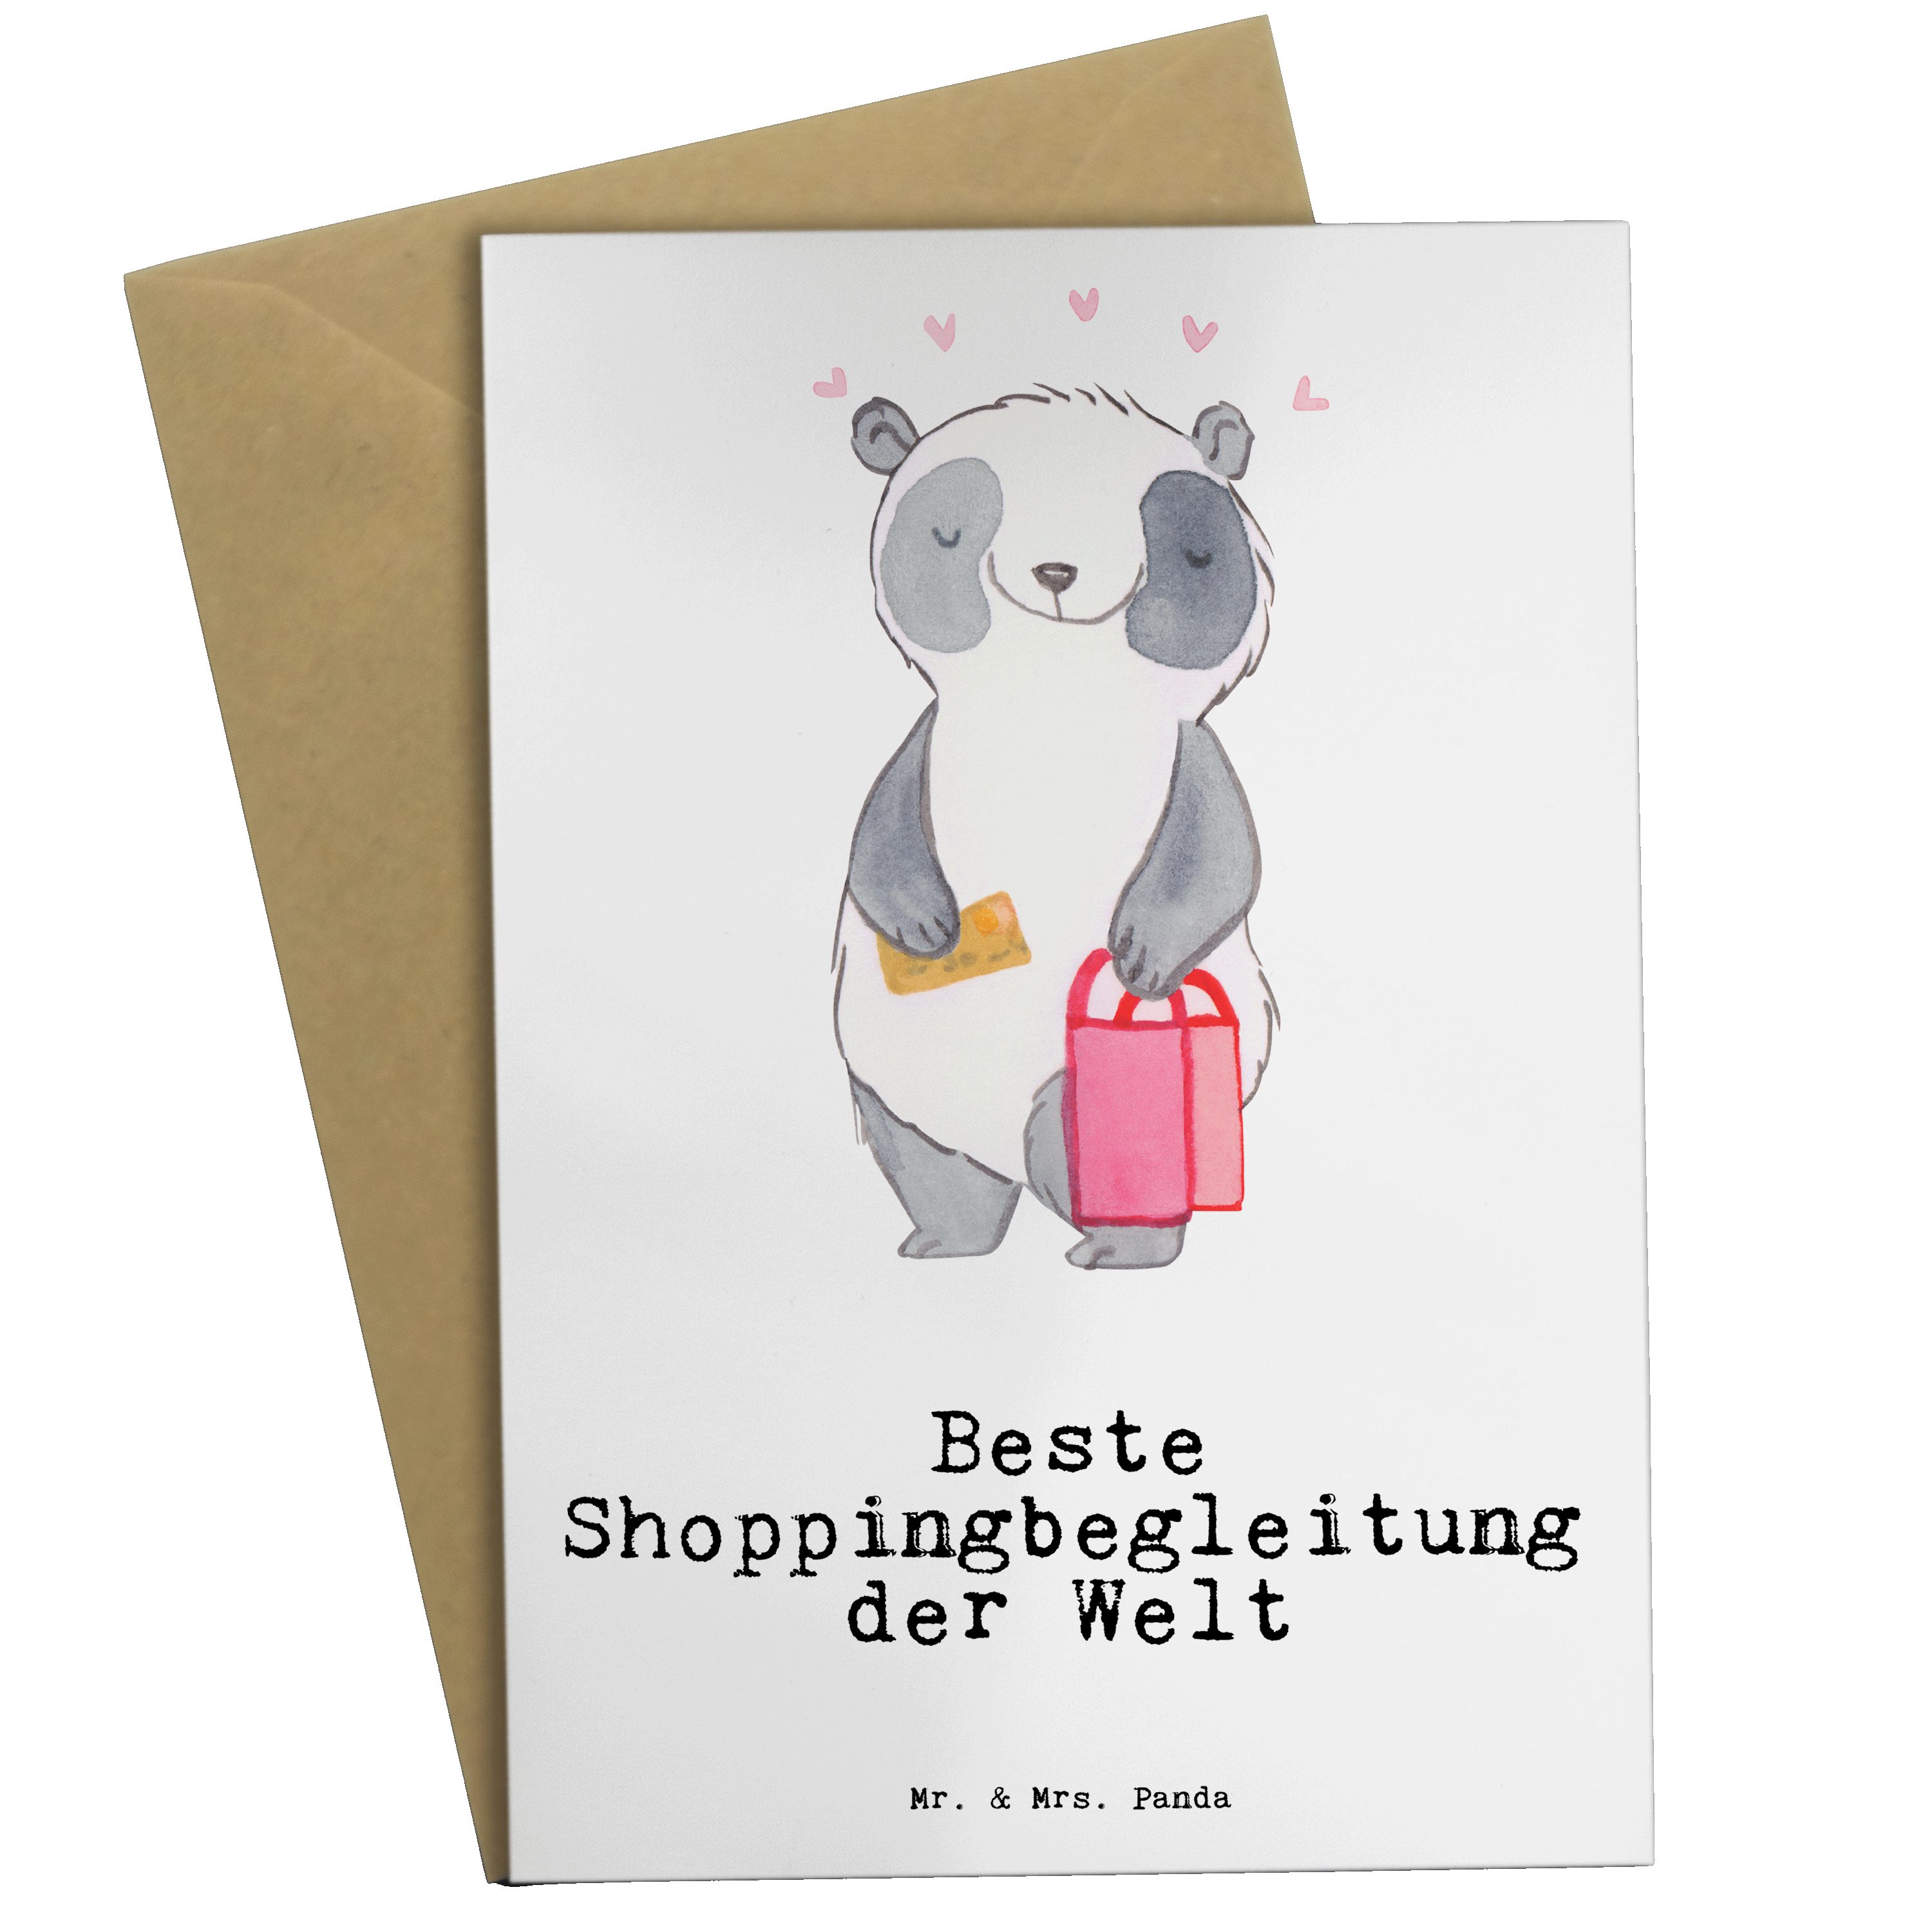 Mr. & Mrs. Panda Grußkarte Panda Beste Shoppingbegleitung der Welt - Weiß - Geschenk, Geschenkti